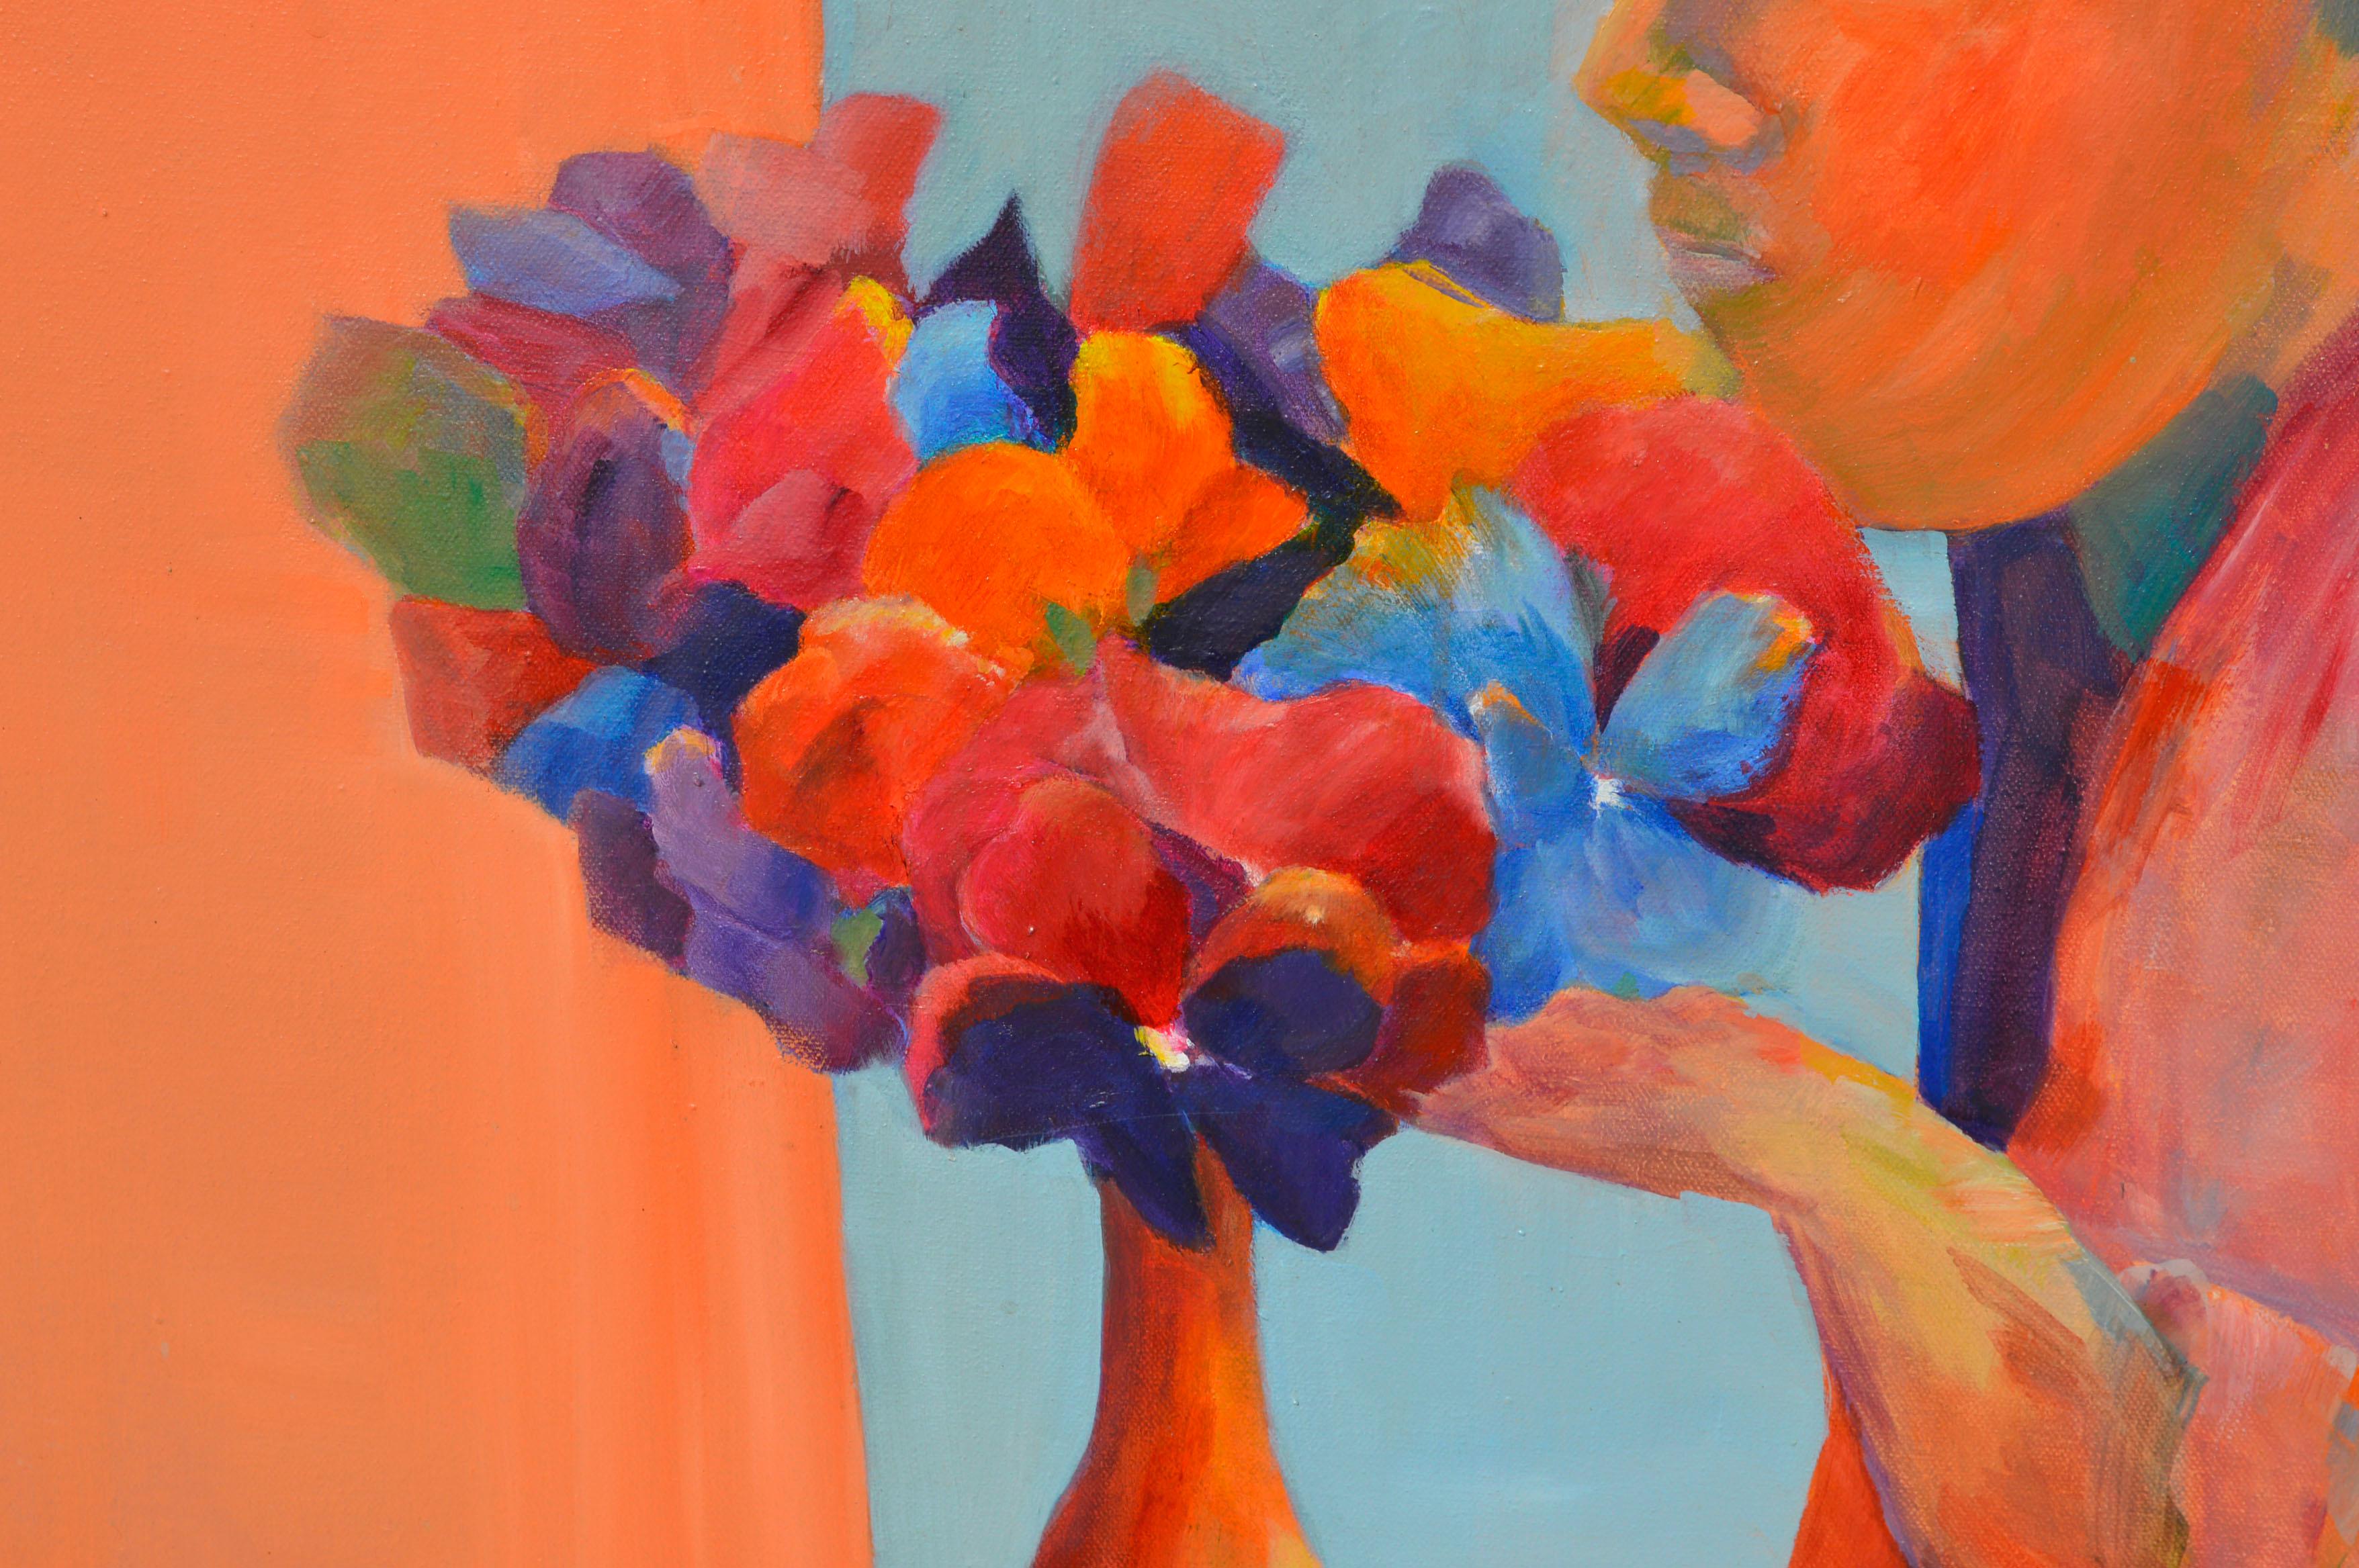 Peinture figurative fauviste lumineuse et colorée d'une femme avec un vase de fleurs dans un espace intérieur animé, par un artiste inconnu de la Bay Area (américain, 20e siècle). Non signée. Présenté dans un cadre en bois rustique. Image : 28 